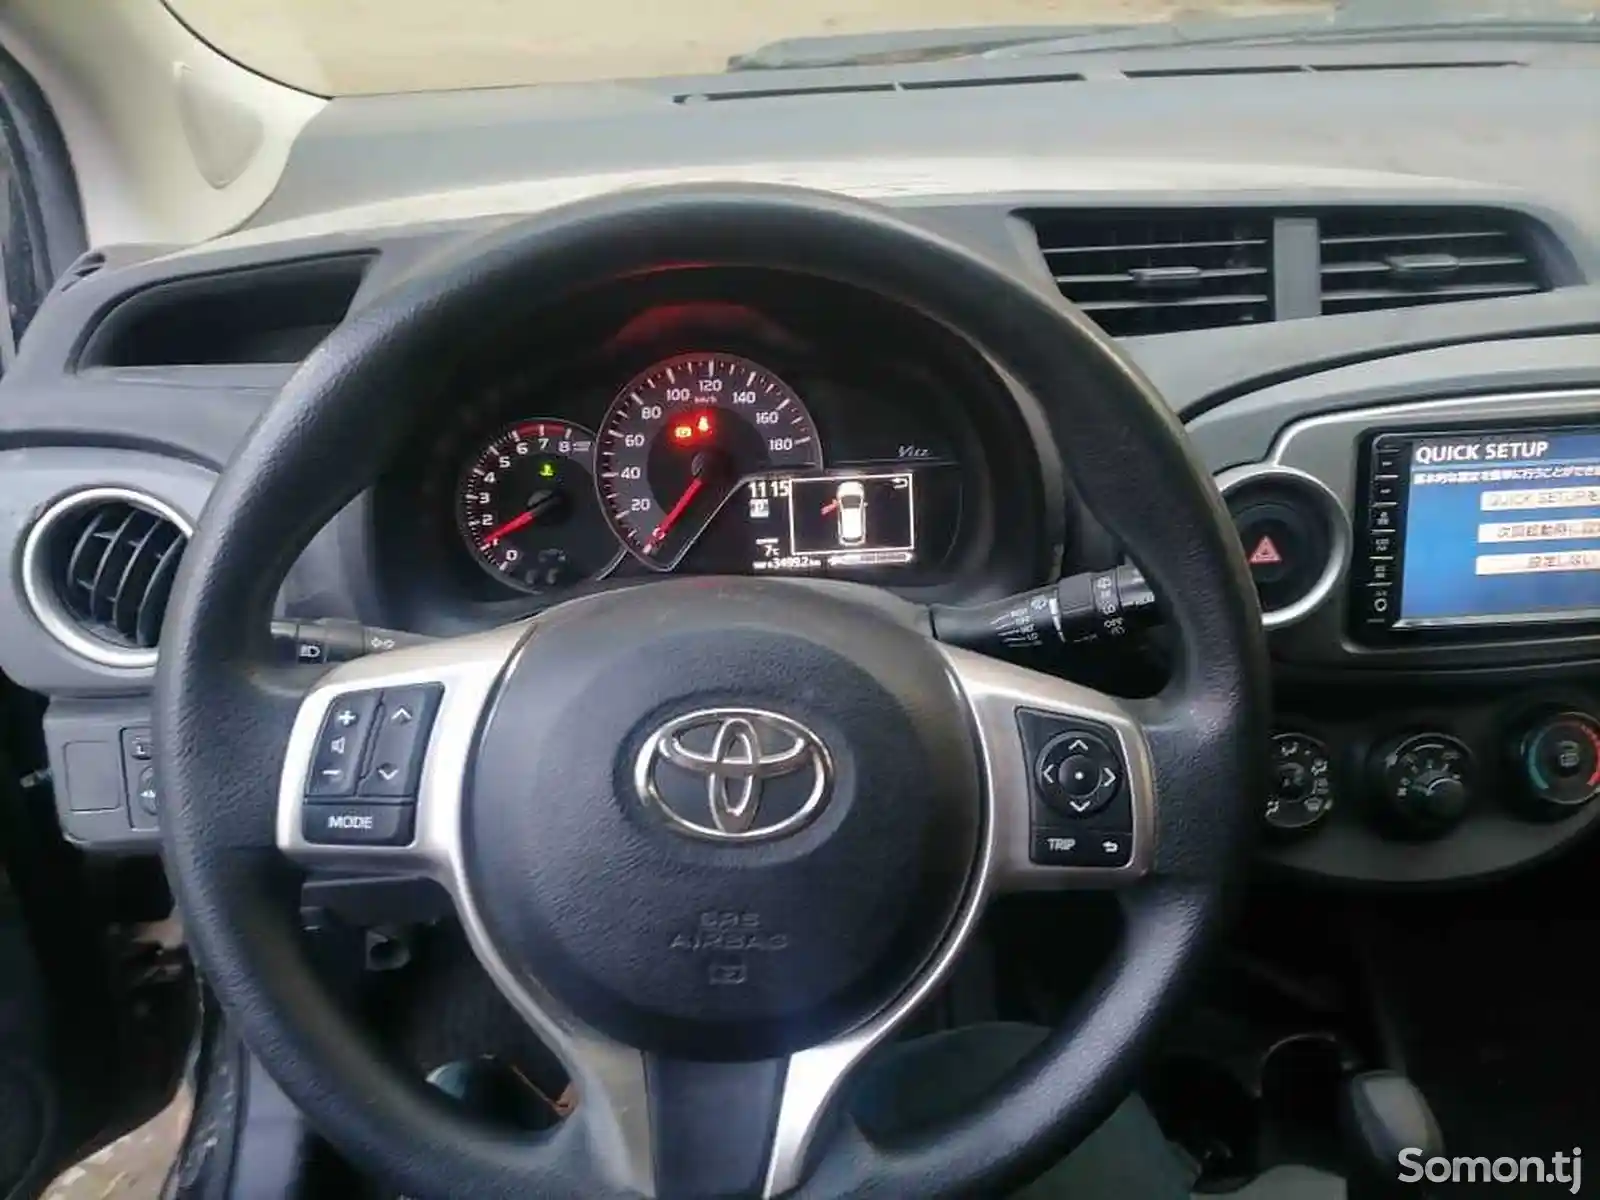 Toyota Vitz, 2014-3